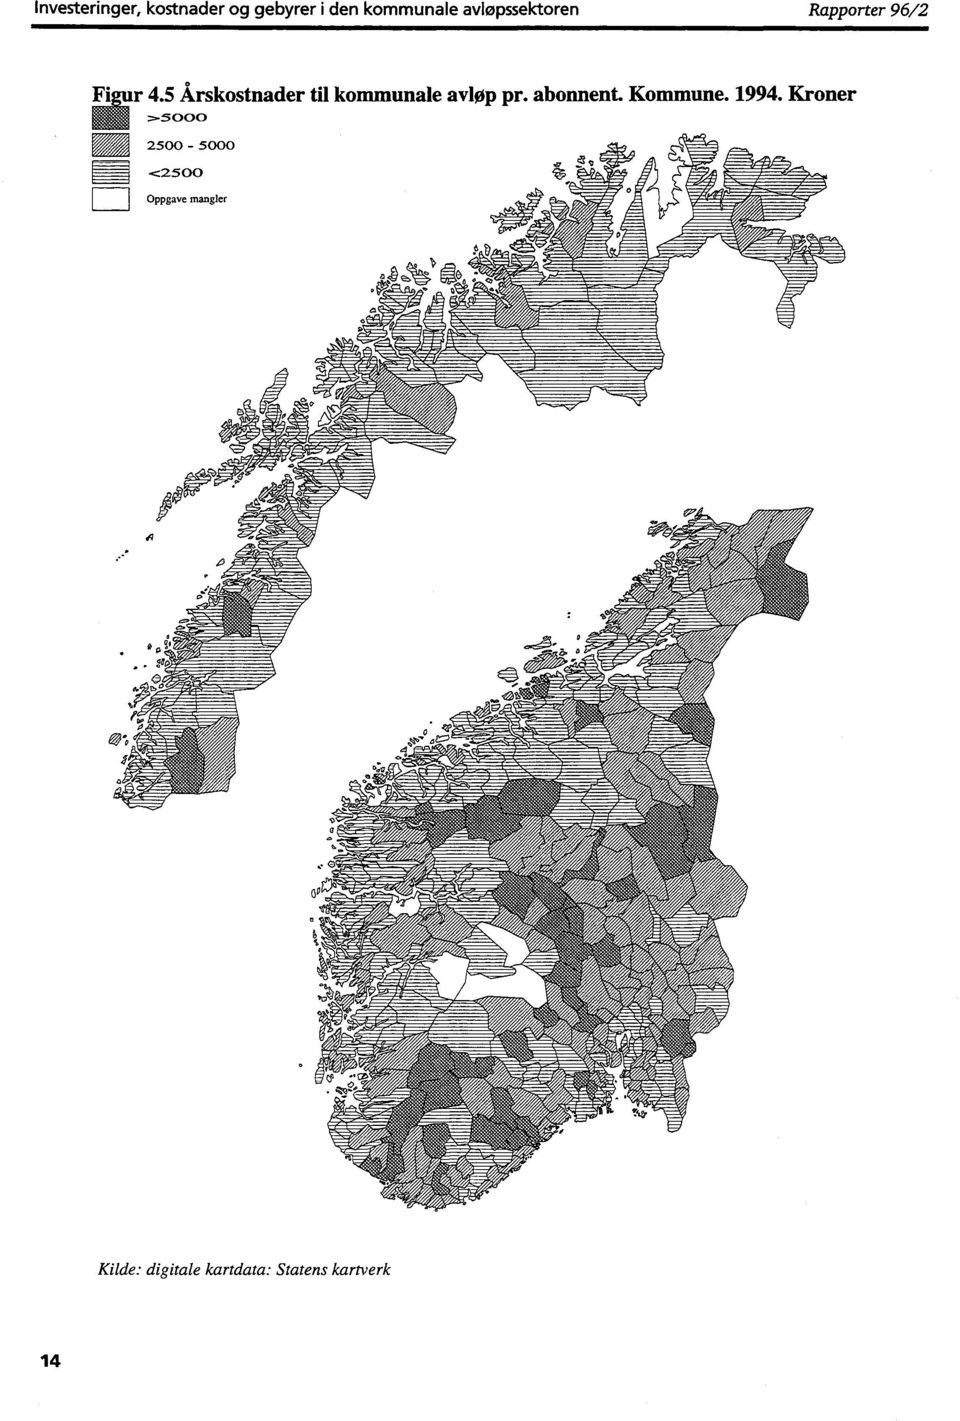 5 Årskostnader til kommunale avløp pr. abonnent. Kommune. 1994.